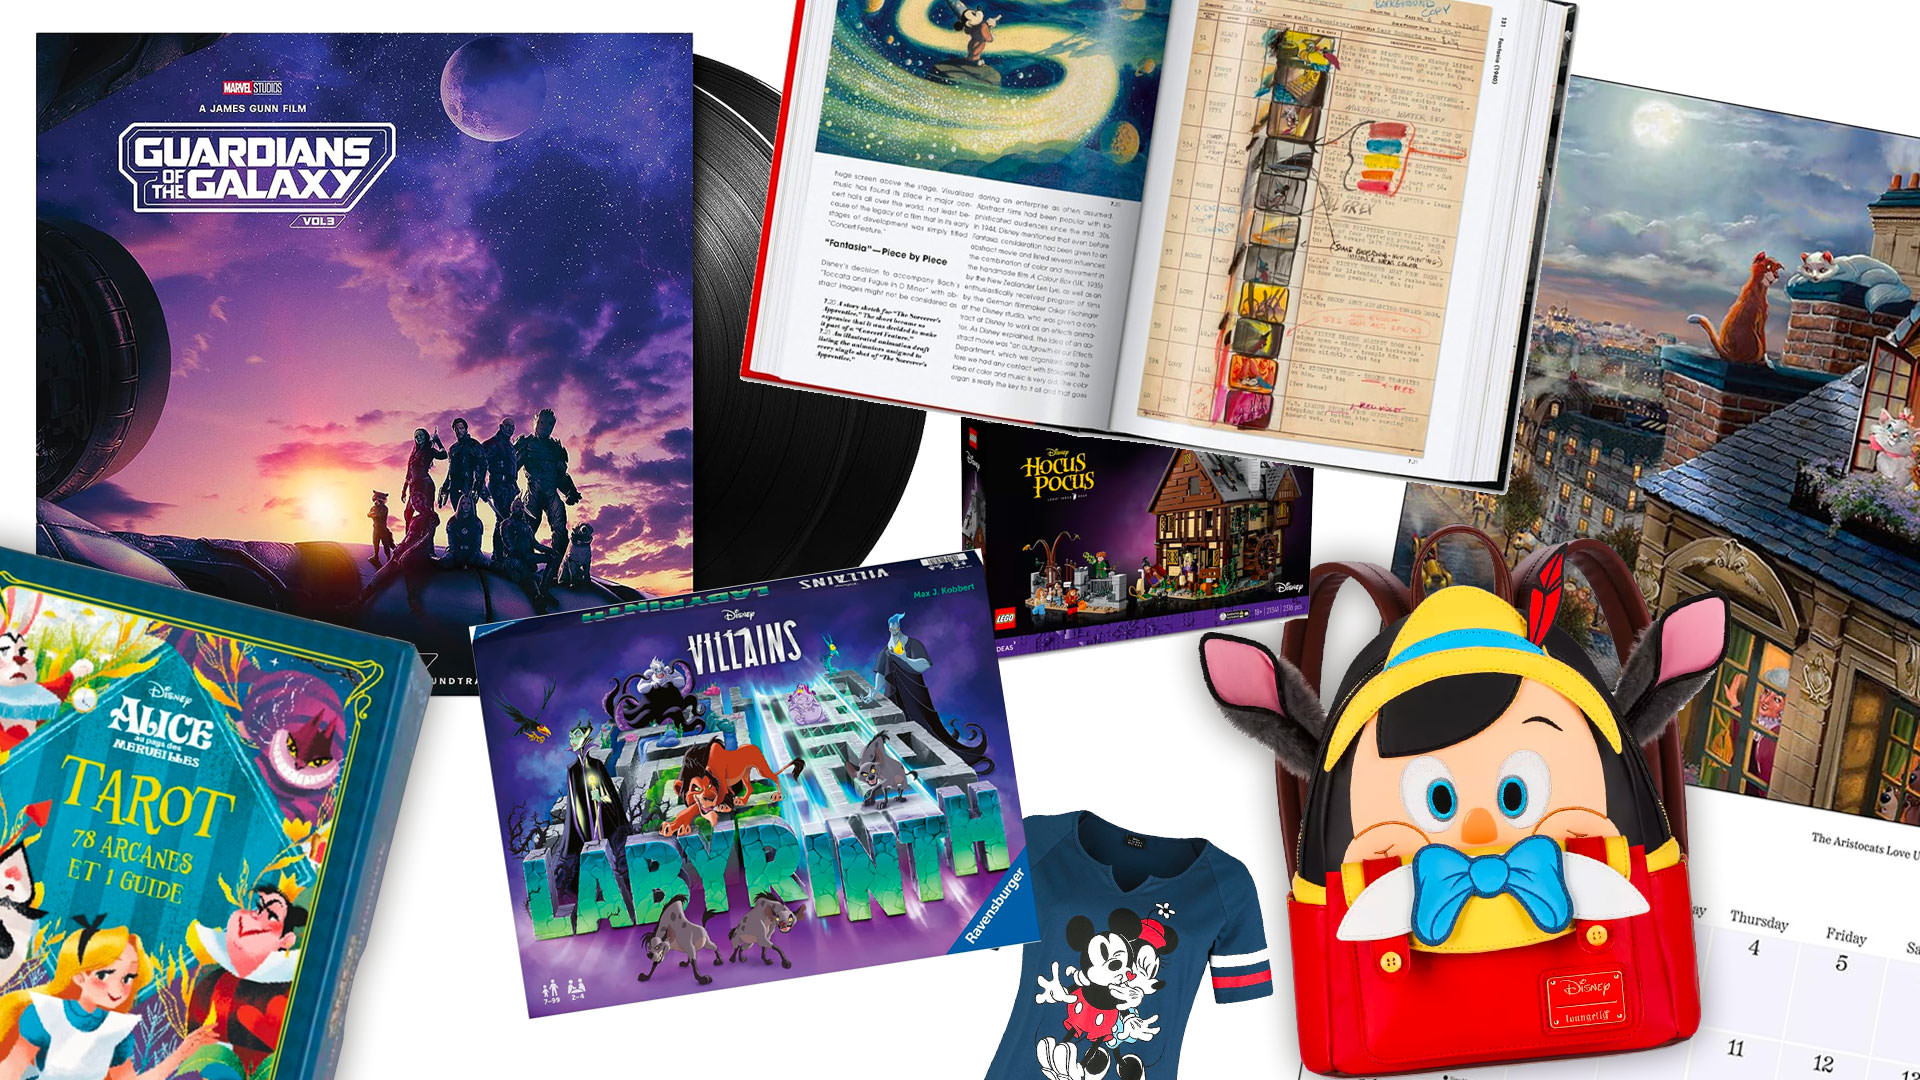 Album d'Activités de Coloriage Disney 100 sur Cadeaux et Anniversaire